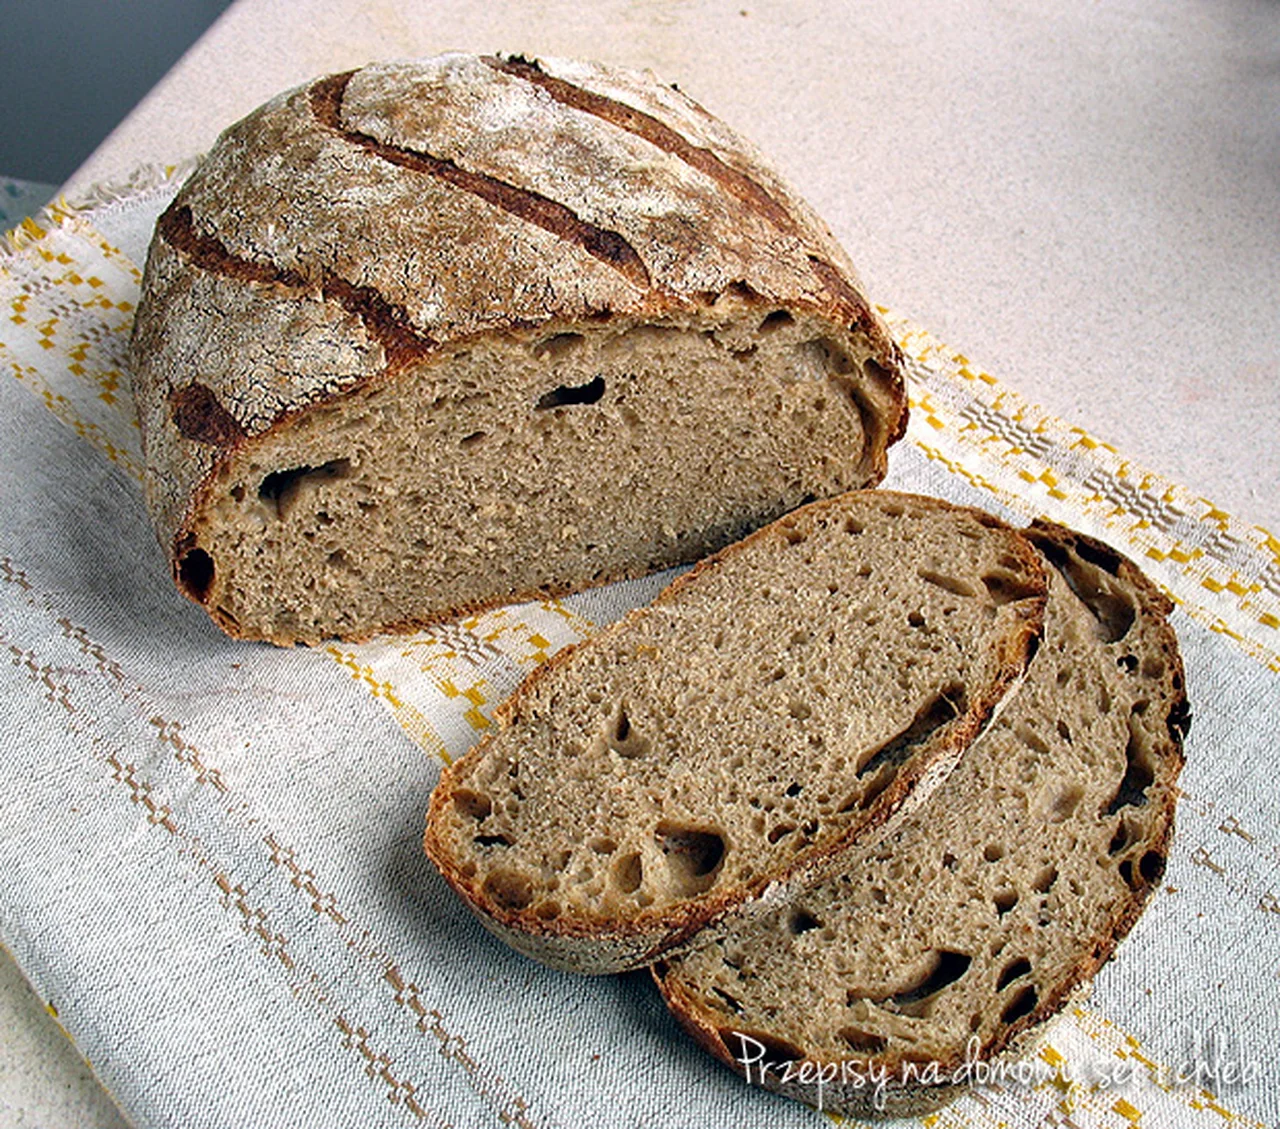 Chleb pszenny półrazowy